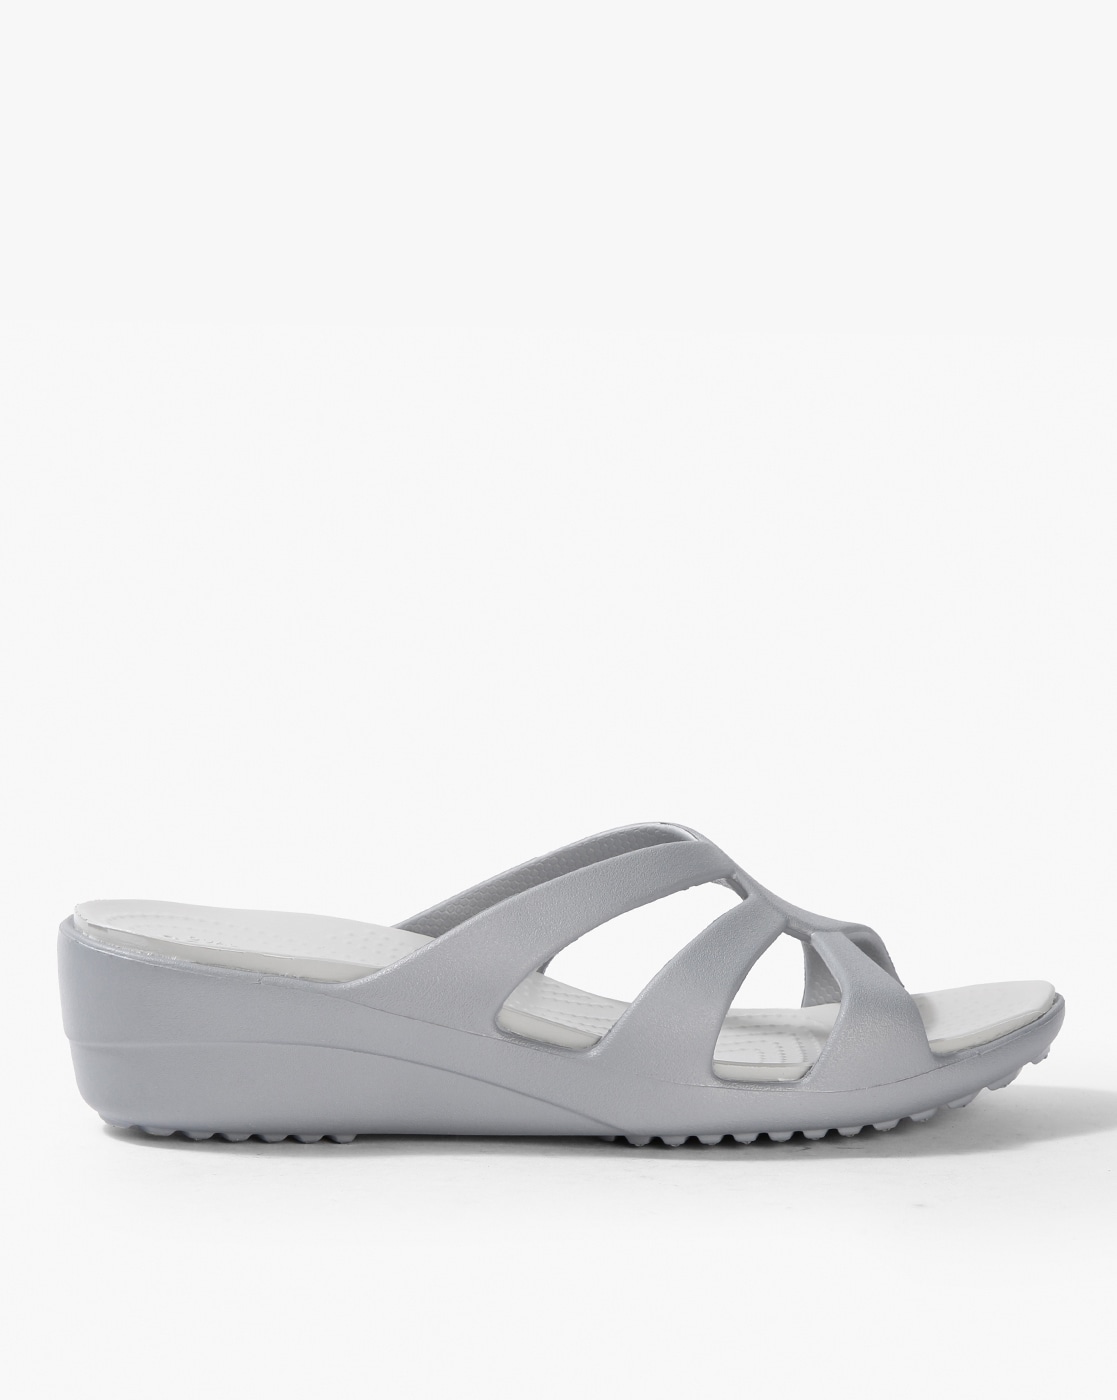 crocs heels for women